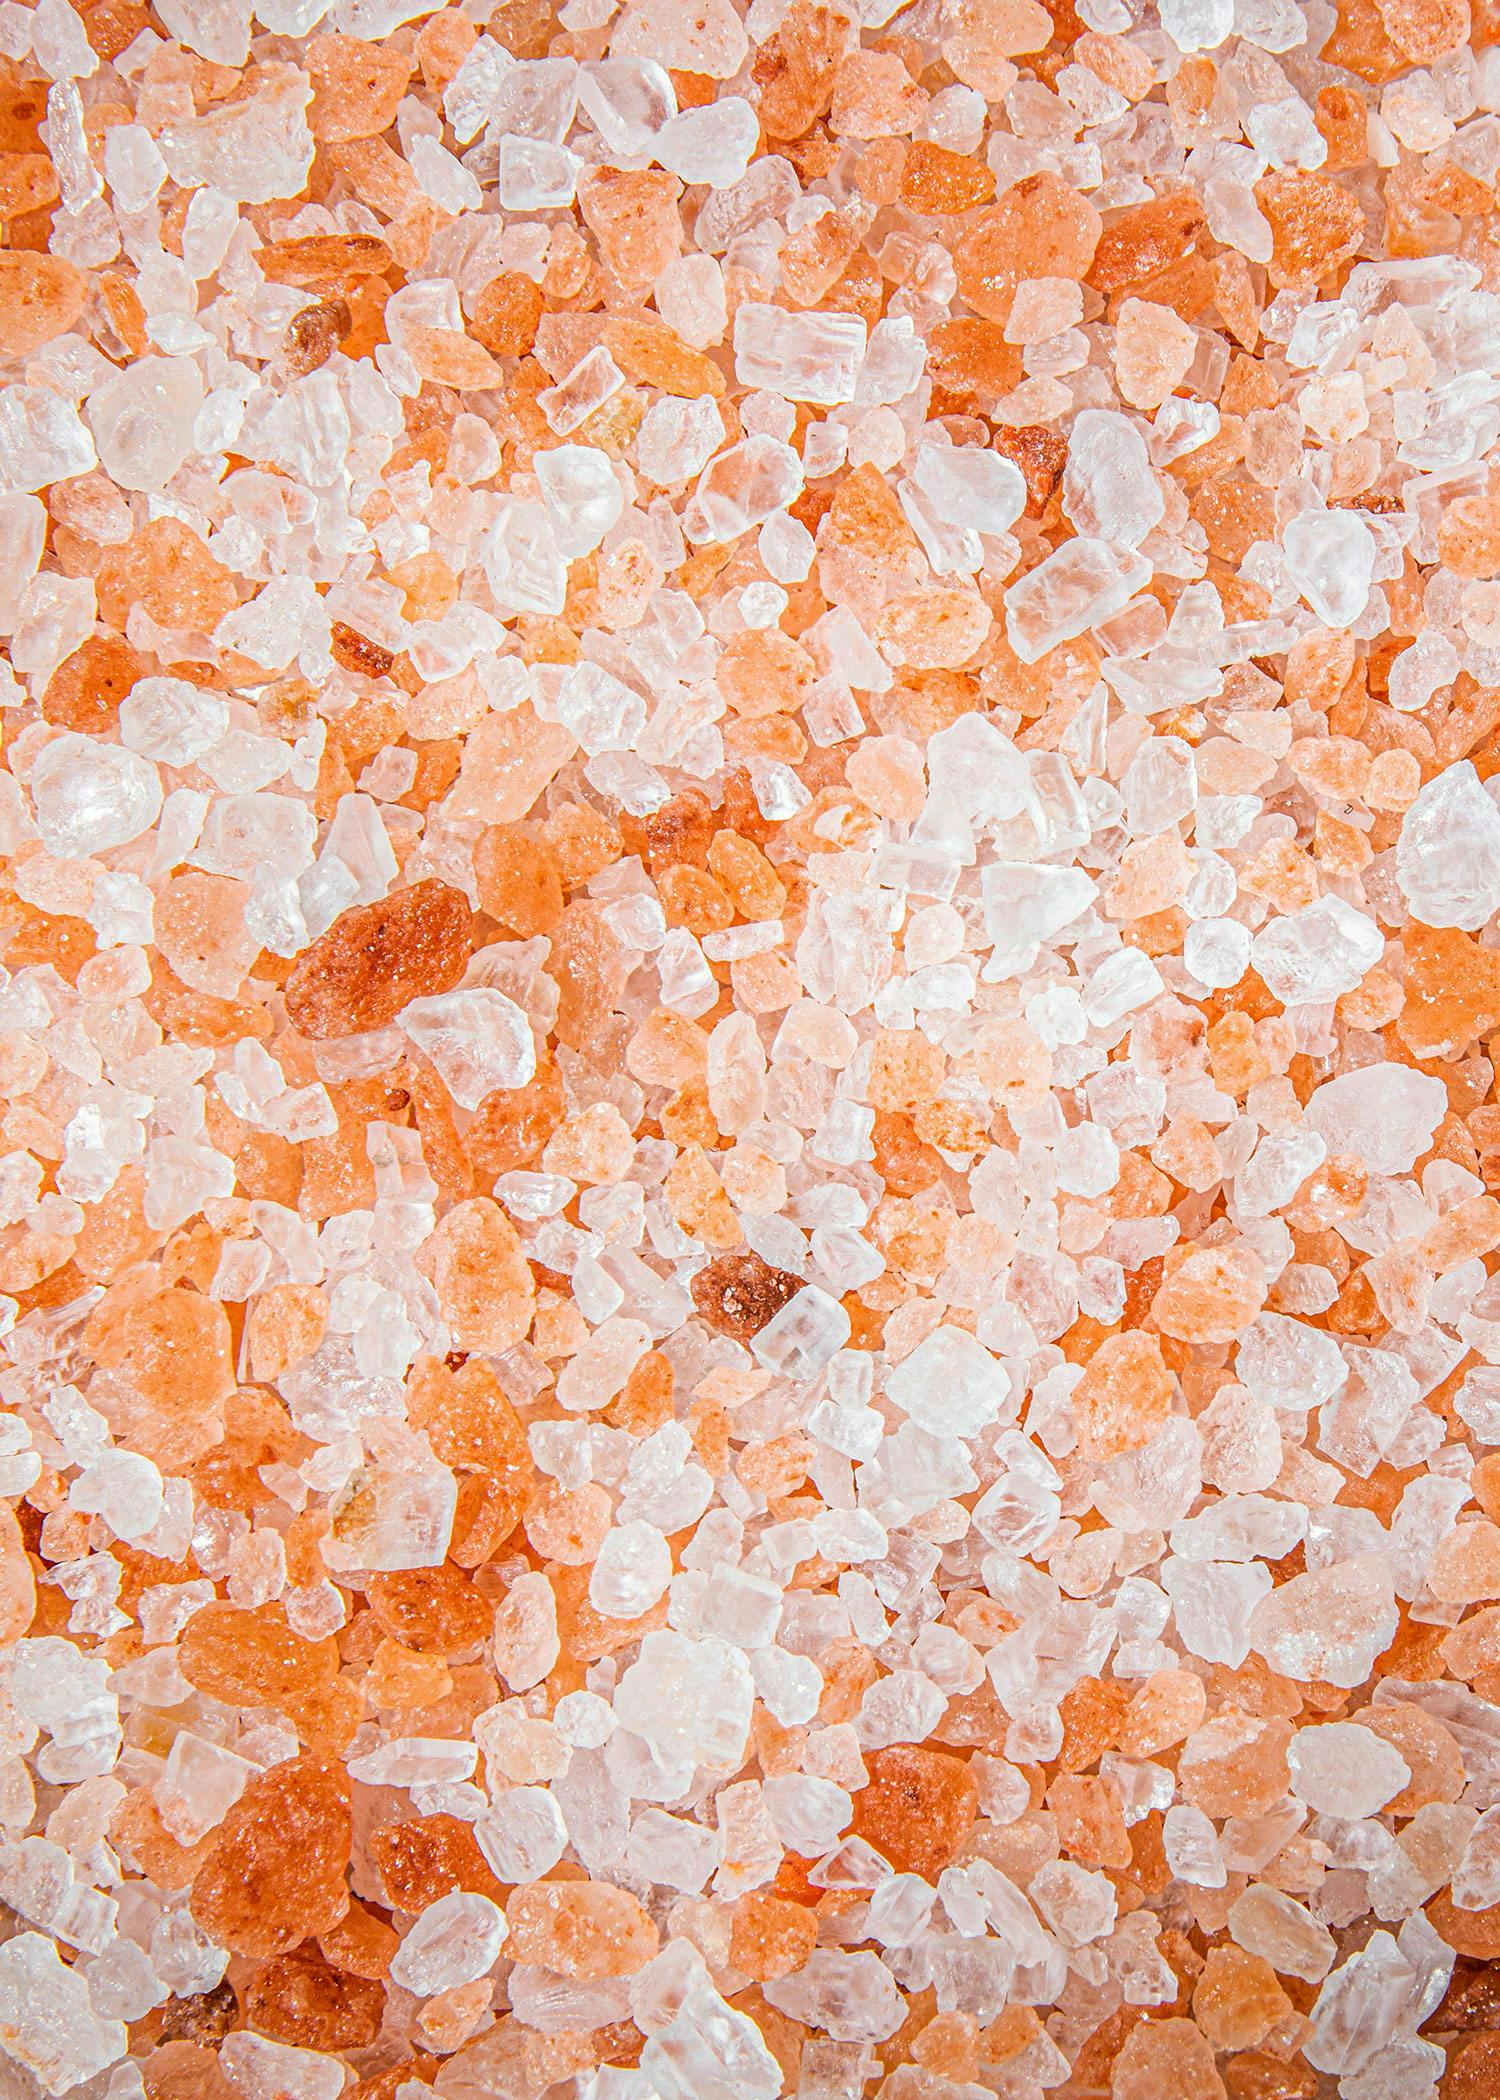 Come viene prodotto il sale?